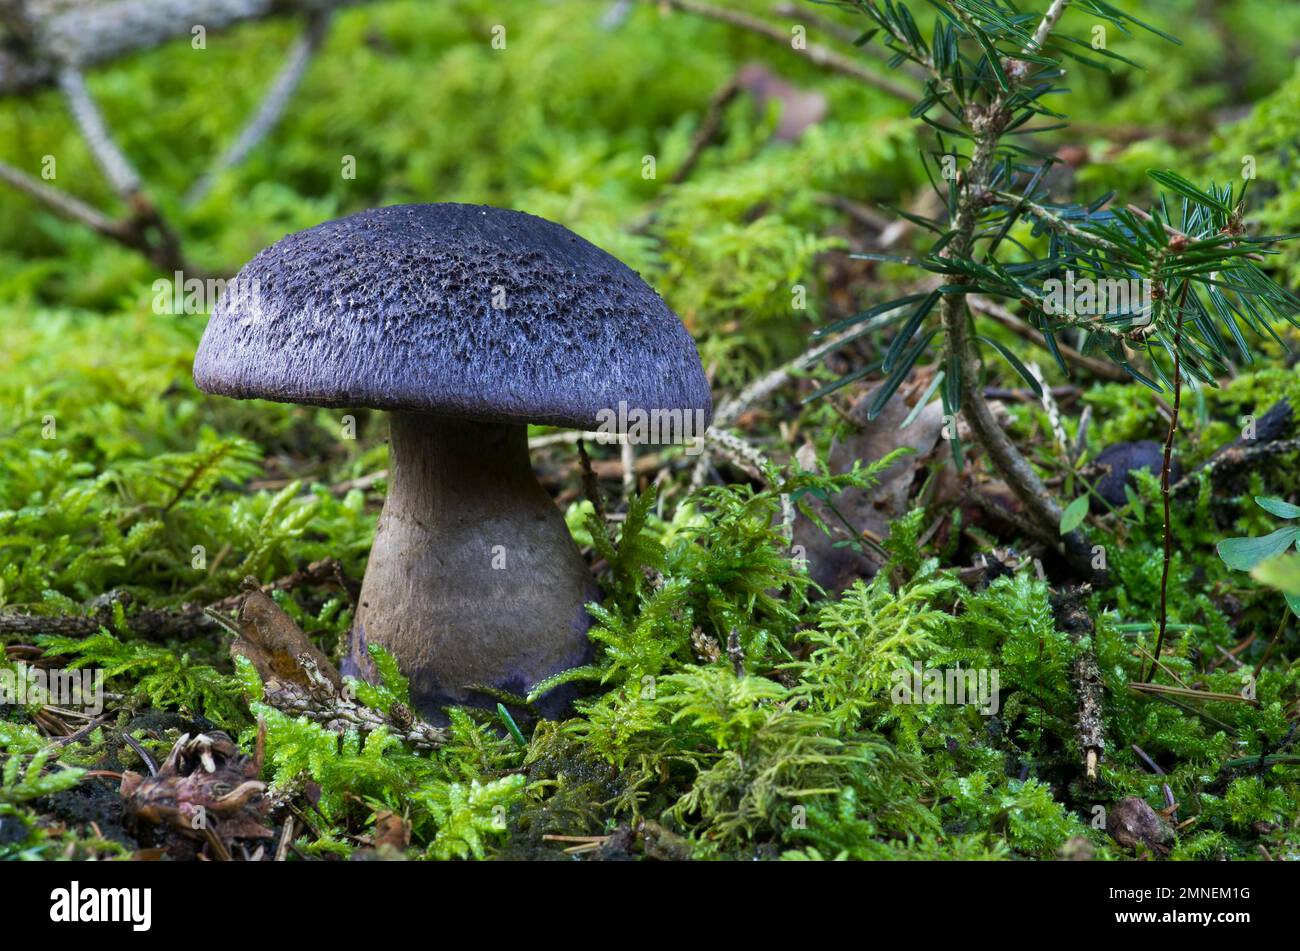 Violet webcap (Cortinarius violaceus), coniferous forest, Departement Haut-Rhin, Alsace, France Stock Photo